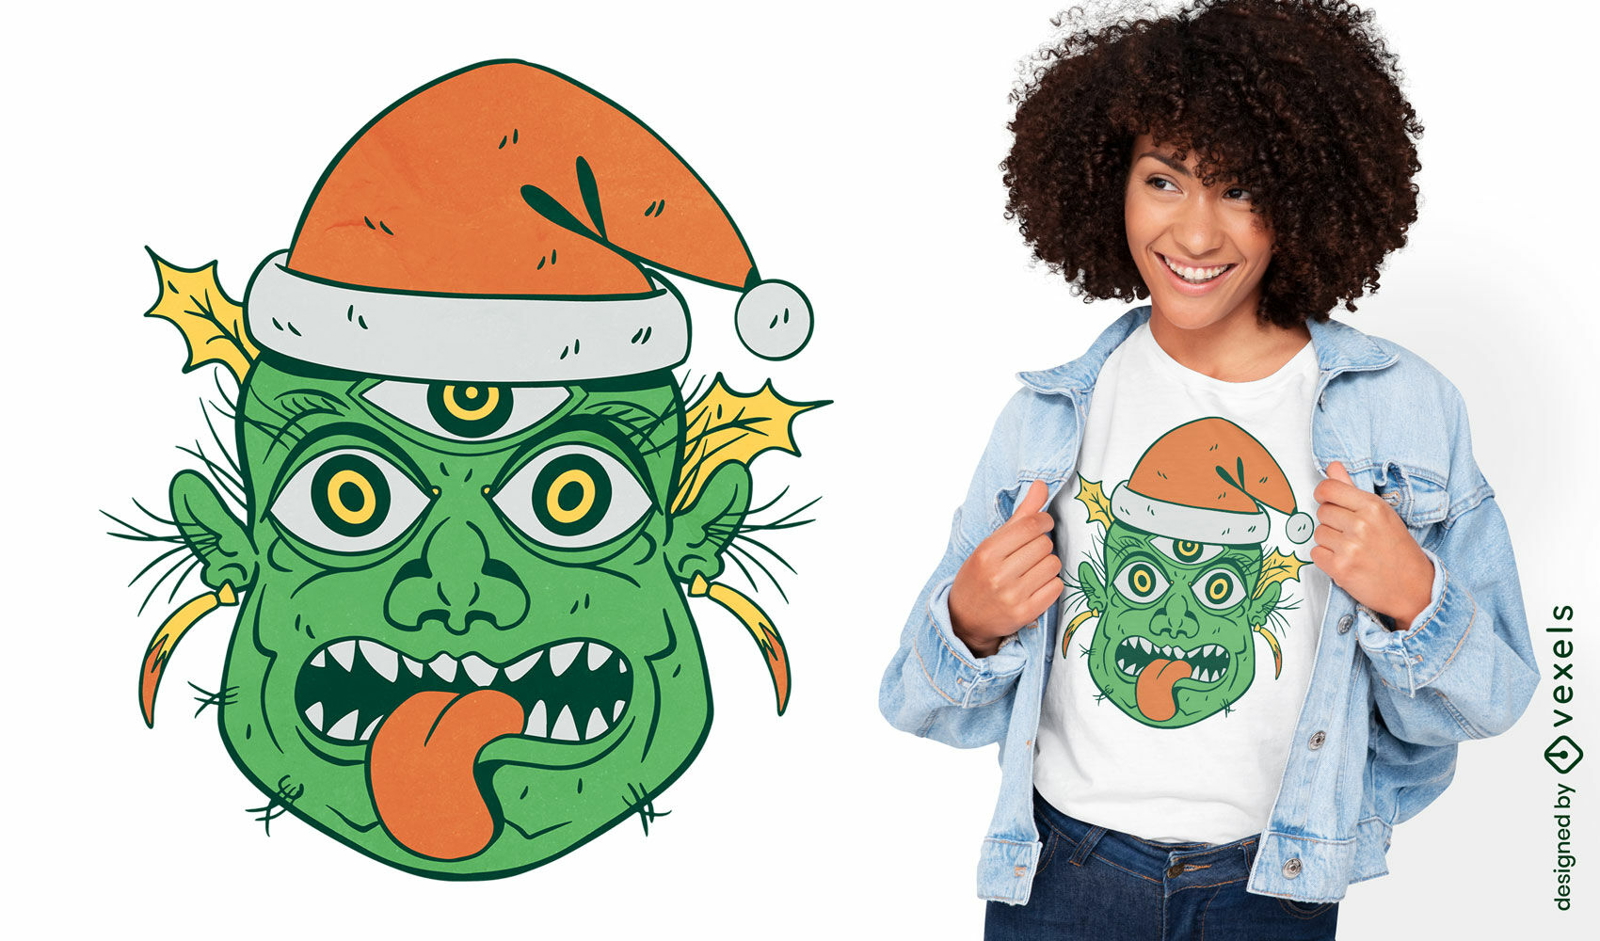 Weihnachtsgrünes Monster-T-Shirt-Design